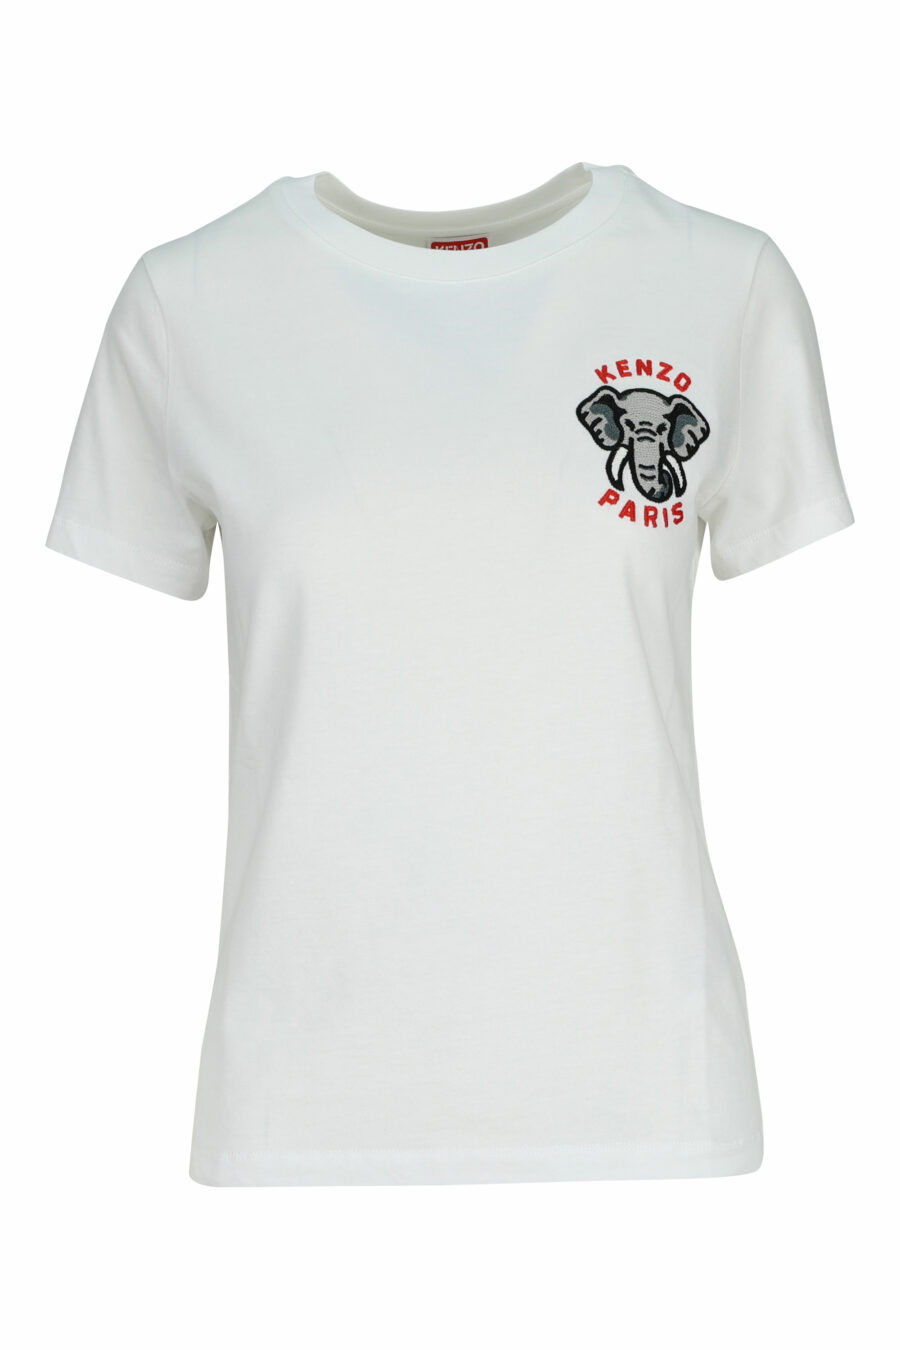 Camiseta blanca con minilogo "kenzo elephant" - 3612230620117 2